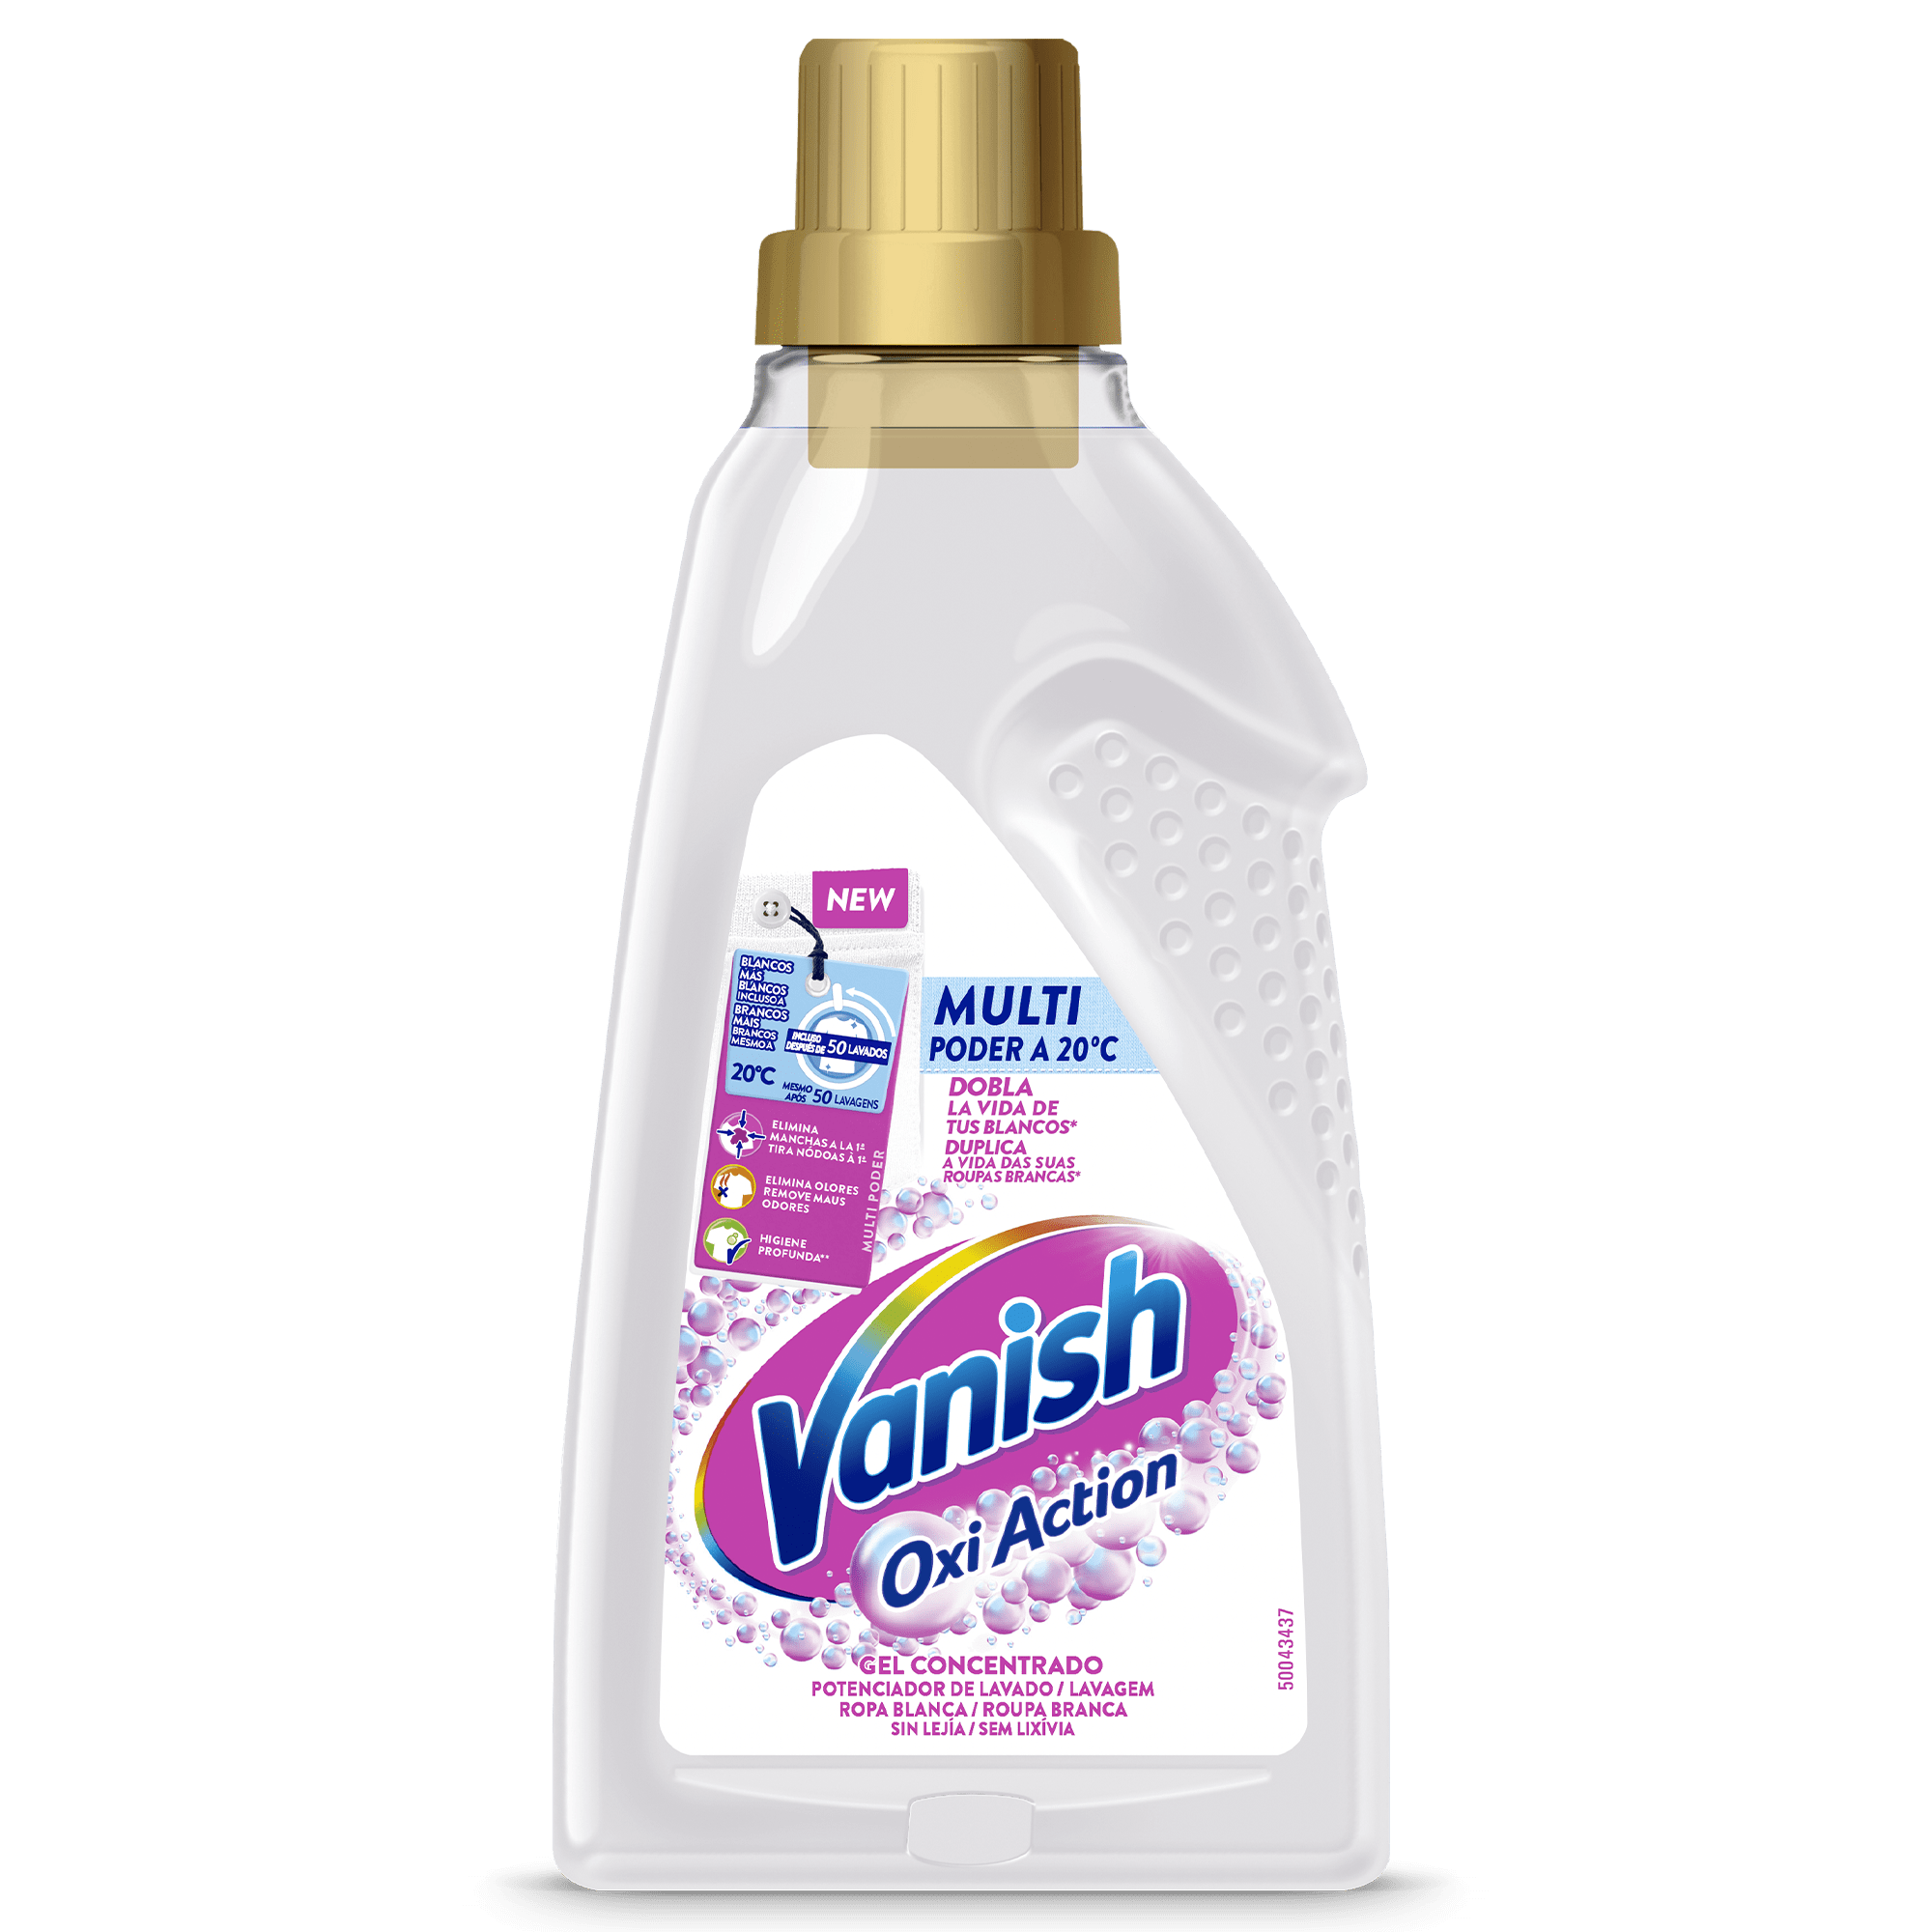 Vanish Oxi Action Multi Poder potenciador de lavado para ropa blanca y quitamanchas en gel